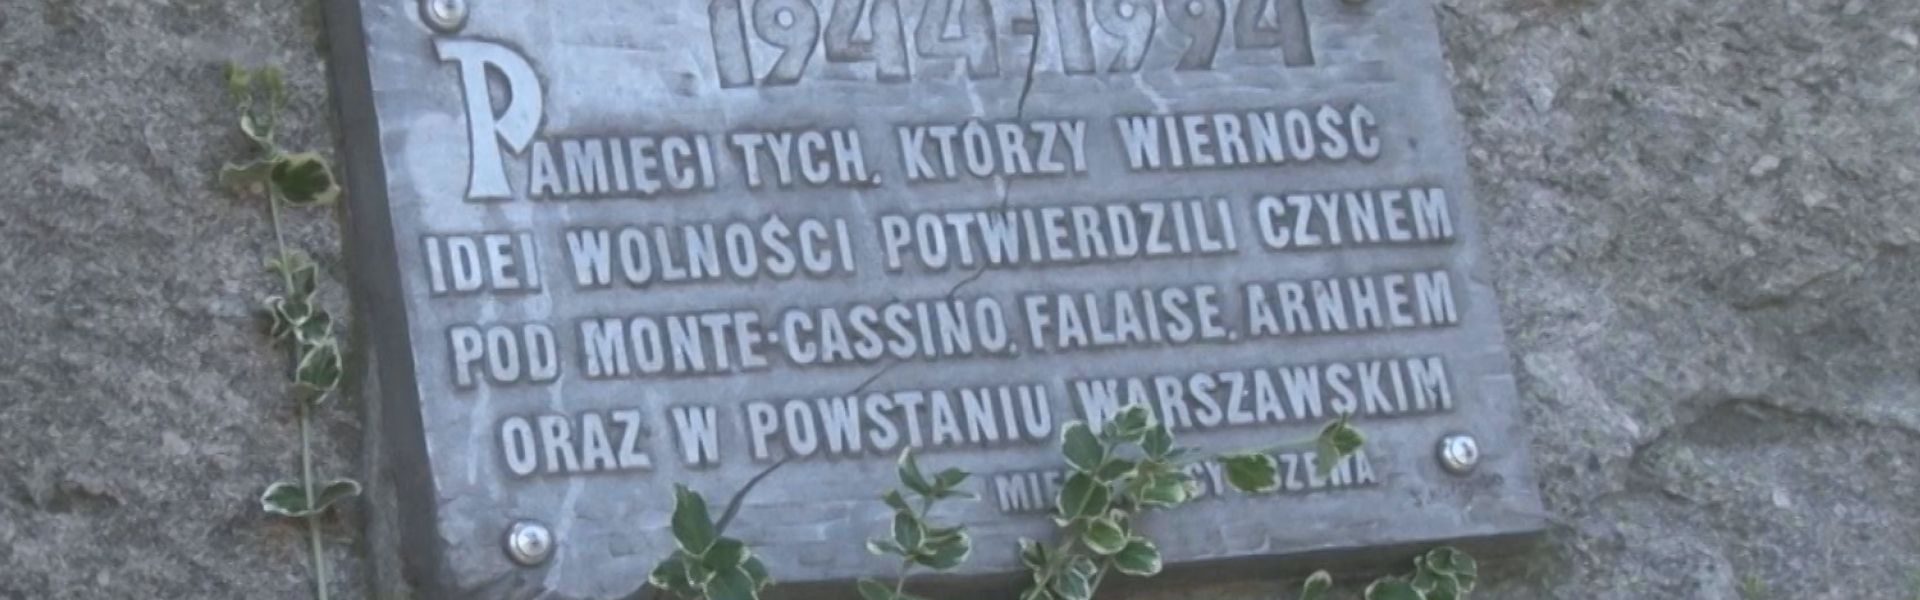 Uczcili pamięć powstańców warszawskich